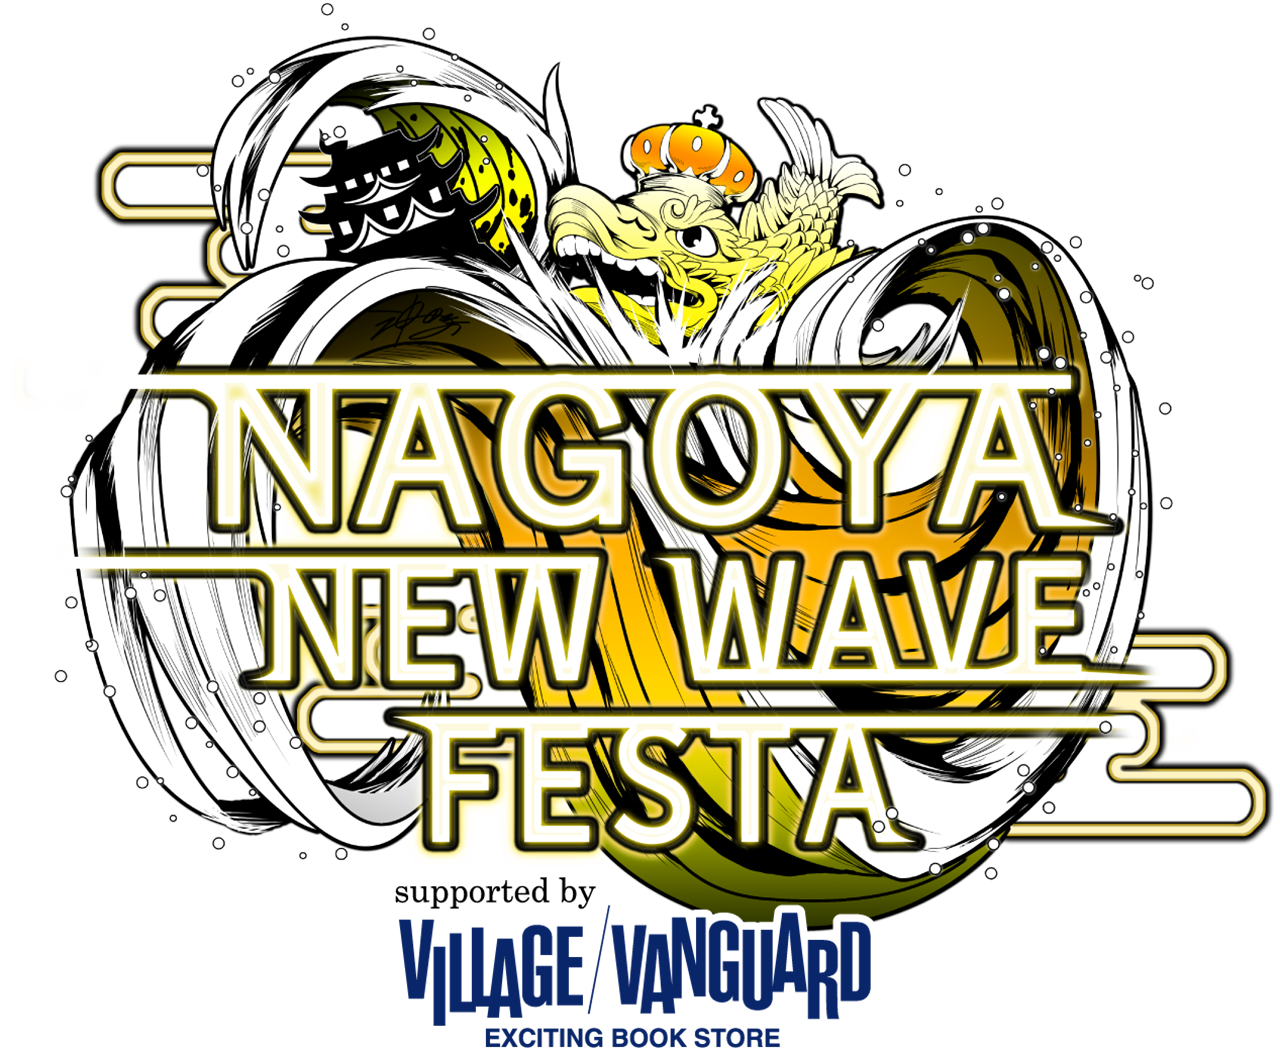 NAGOYA NEW WAVE FESTA 2018